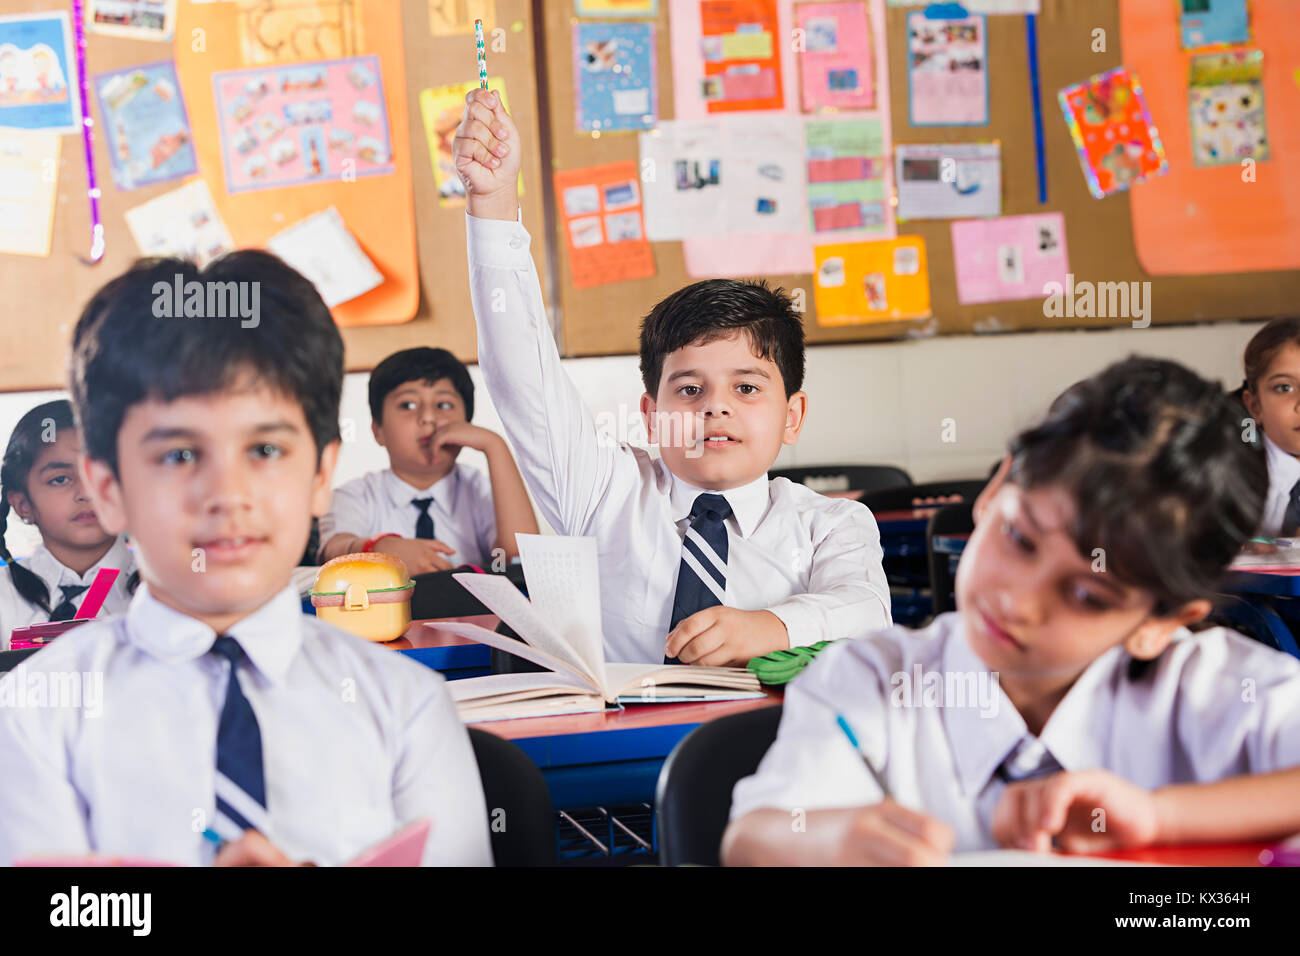 Los estudiantes que estudian en la Escuela India de clase y mano levantada cuestionamiento Foto de stock